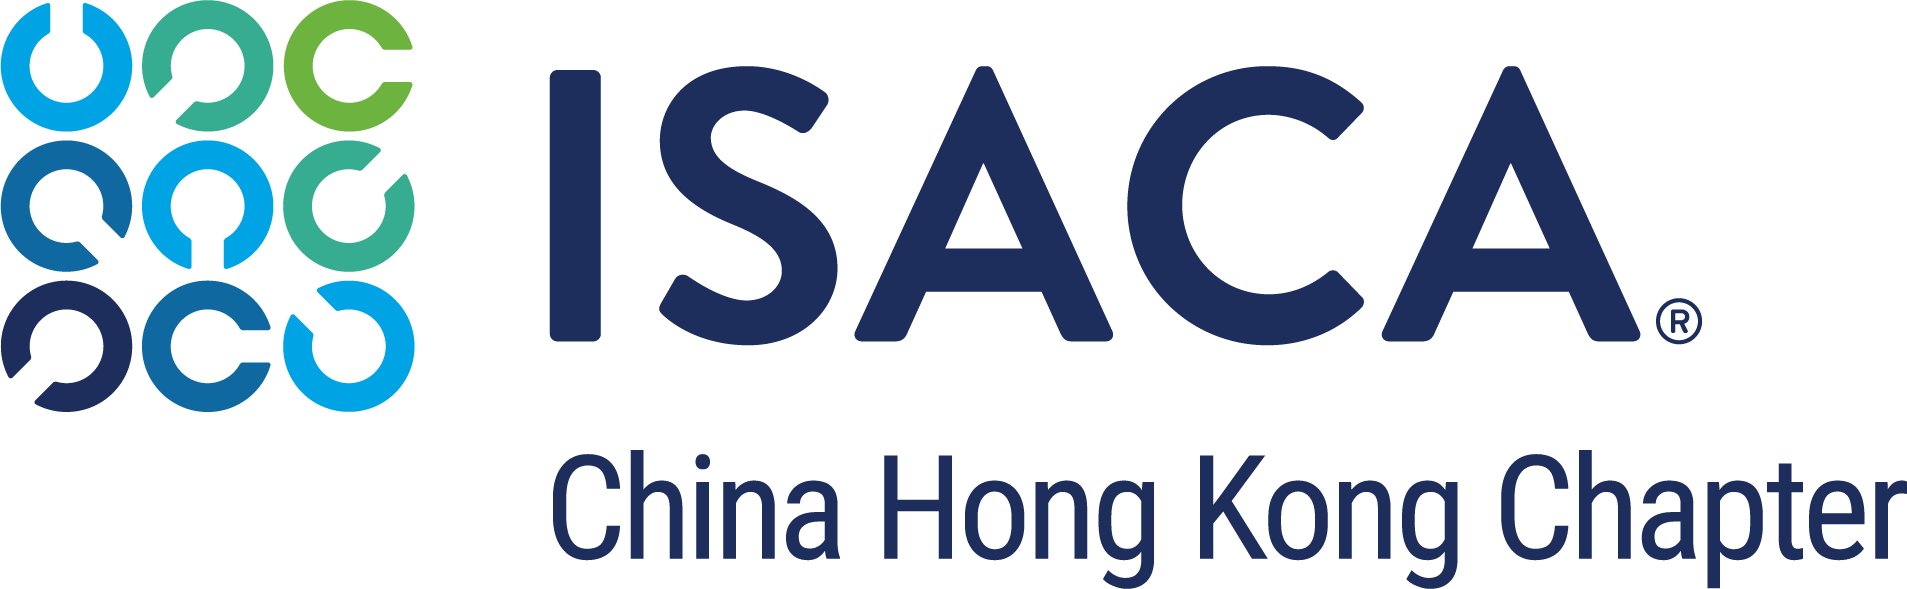 ISACA50_001-ChinaHongKong_5c[2]